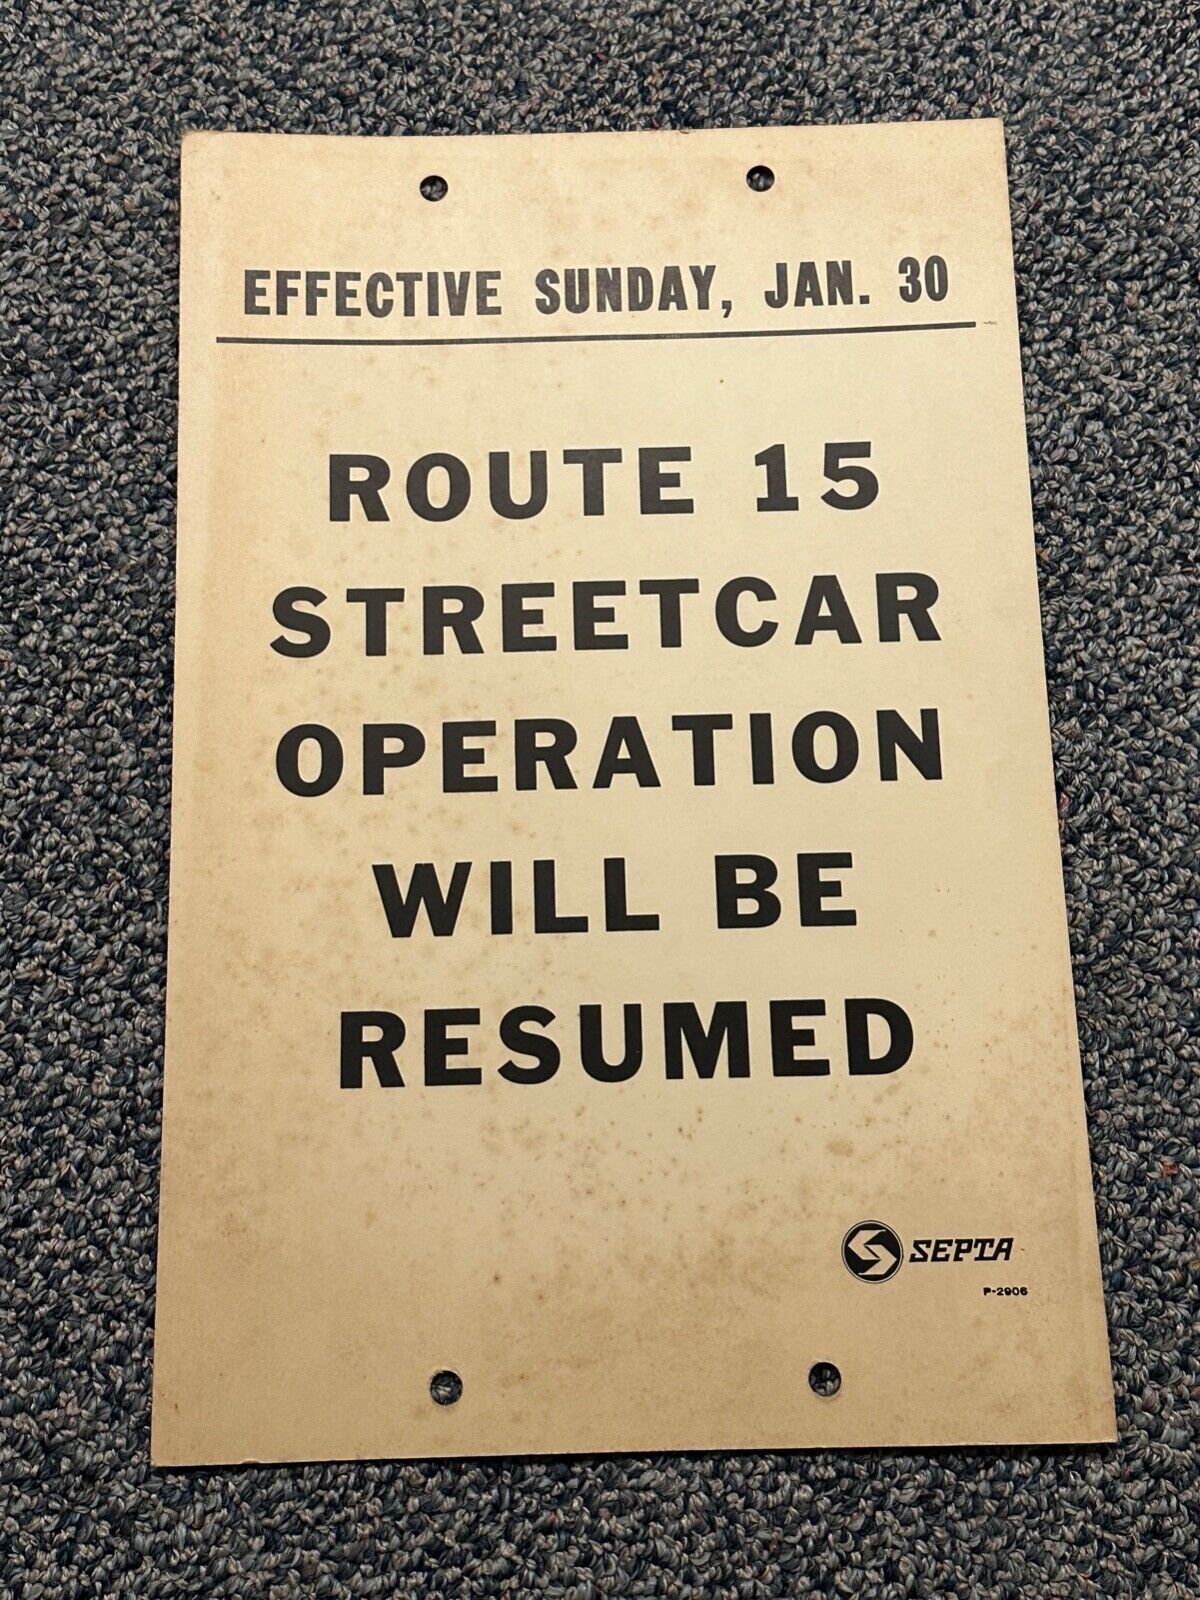 SEPTA Streetcar Route 15 Resumption Announcement Poster 17x11 VTG 1966